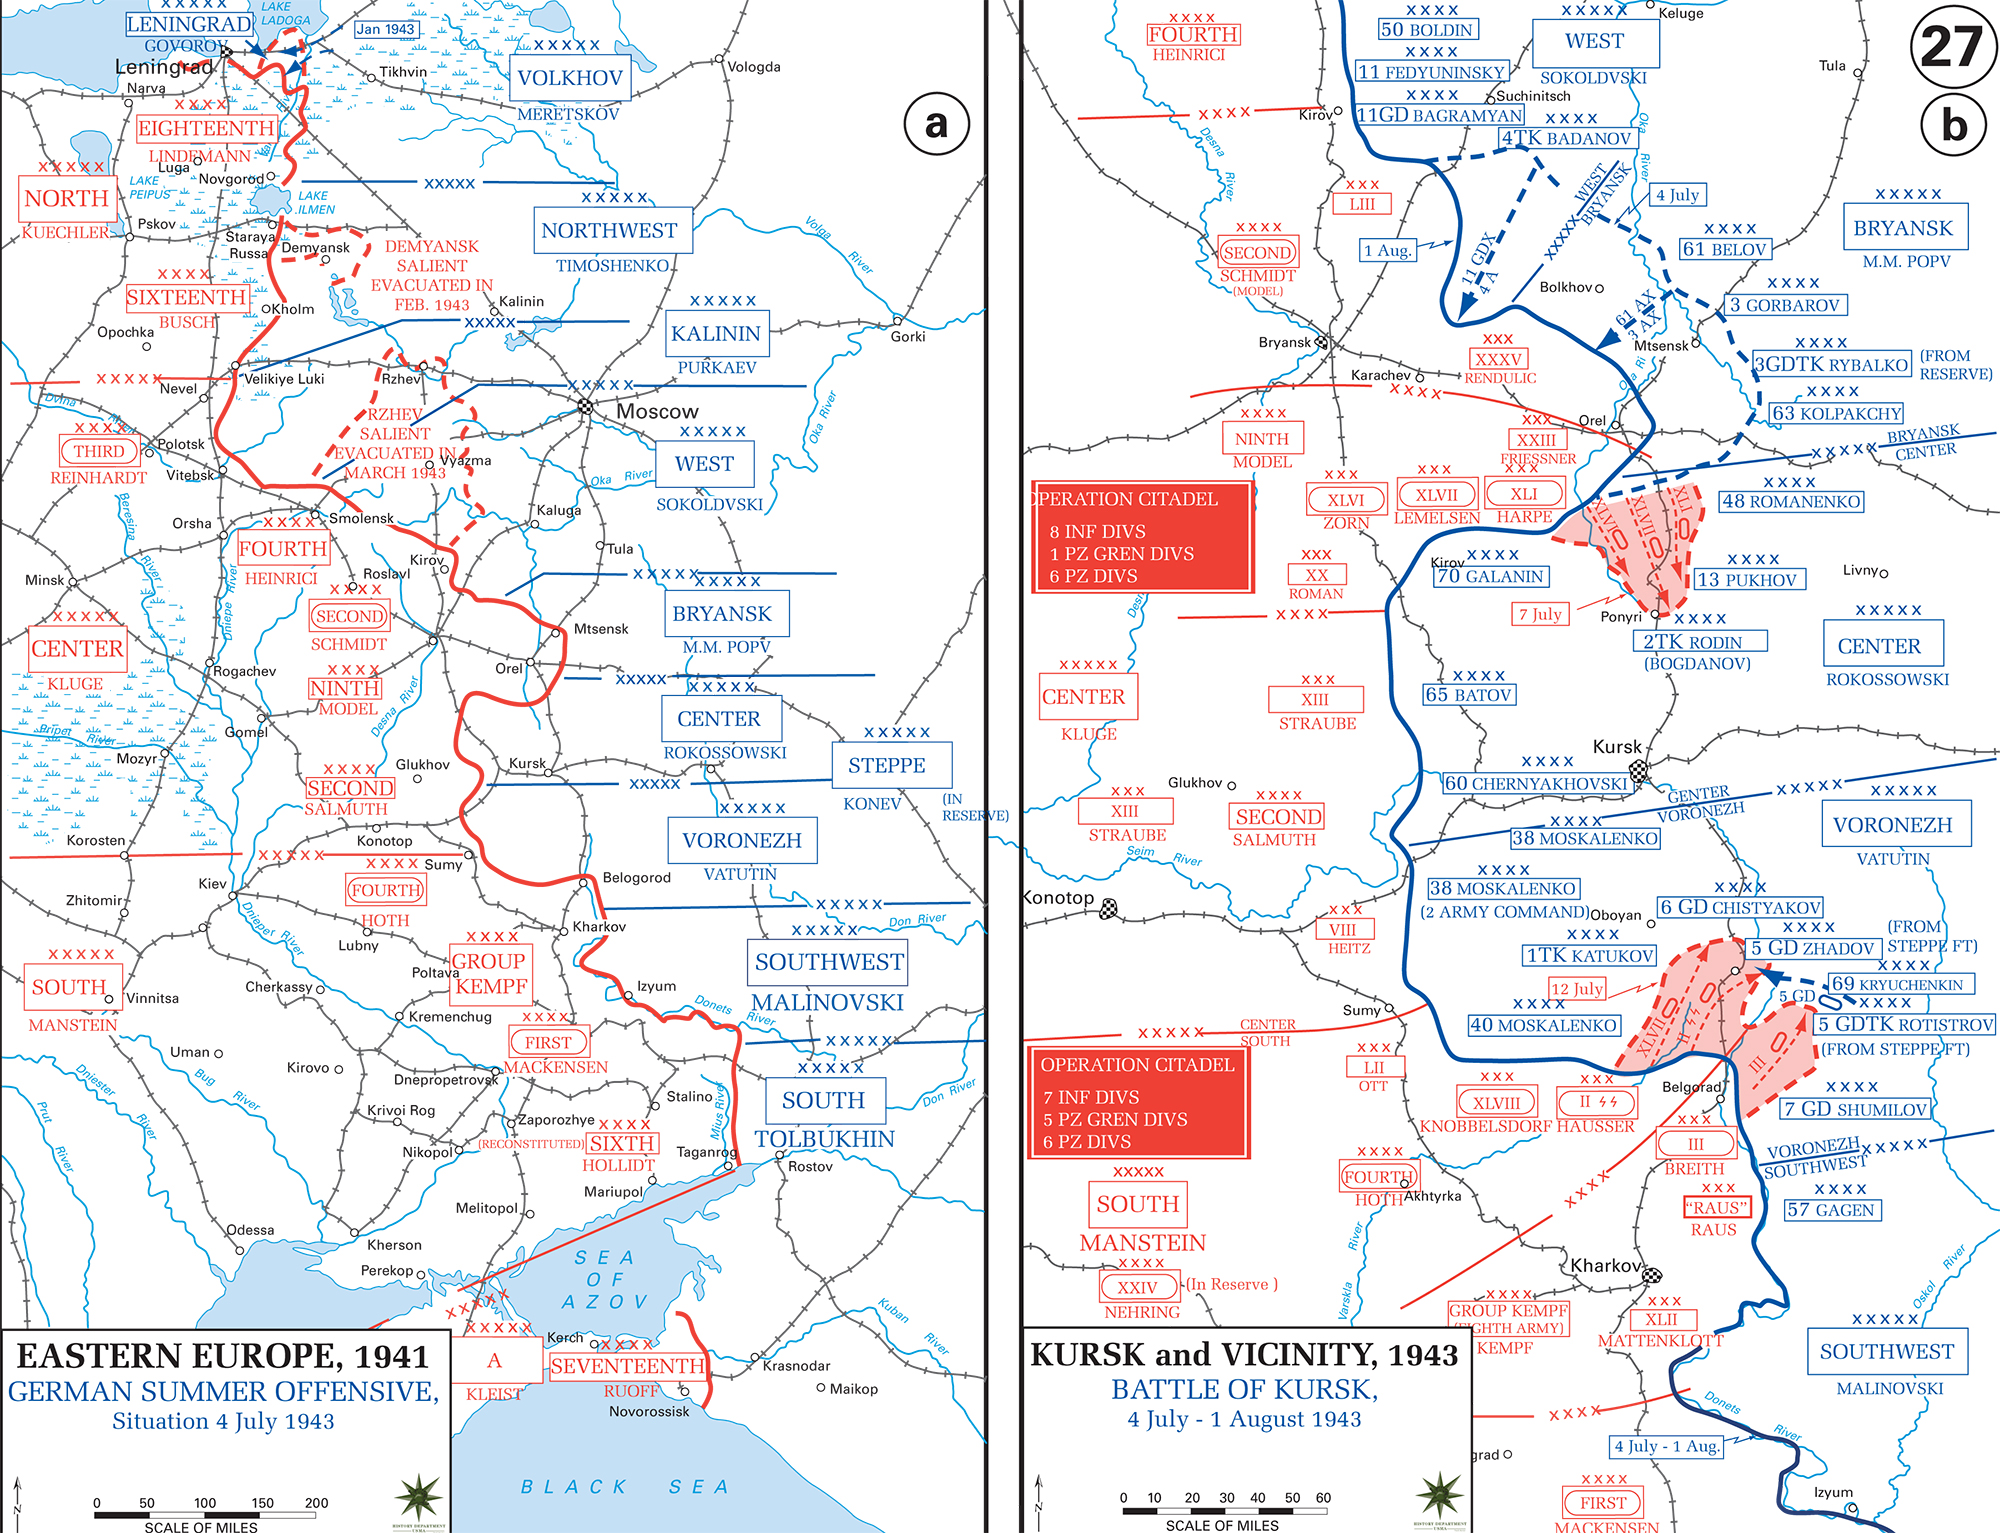 German Summer Offensive, Battle of Kursk July - August 1943